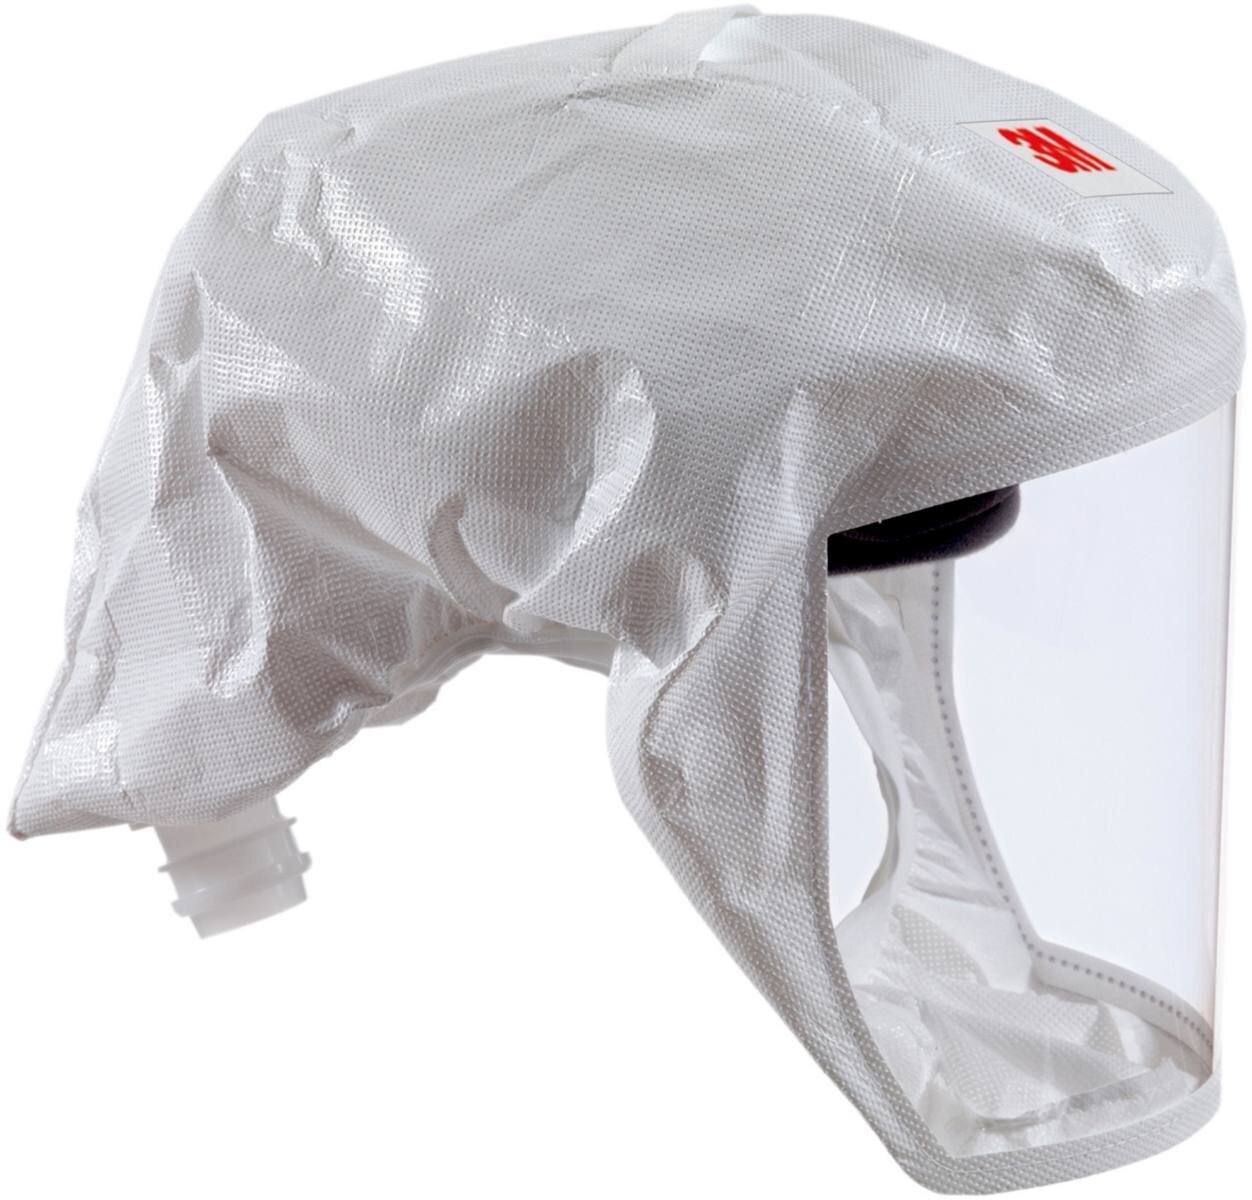 3M Versaflo Gorro ligero desechable S133S, con soporte para la cabeza integrado, blanco, material textil universal, talla S/M - Material: Web 24